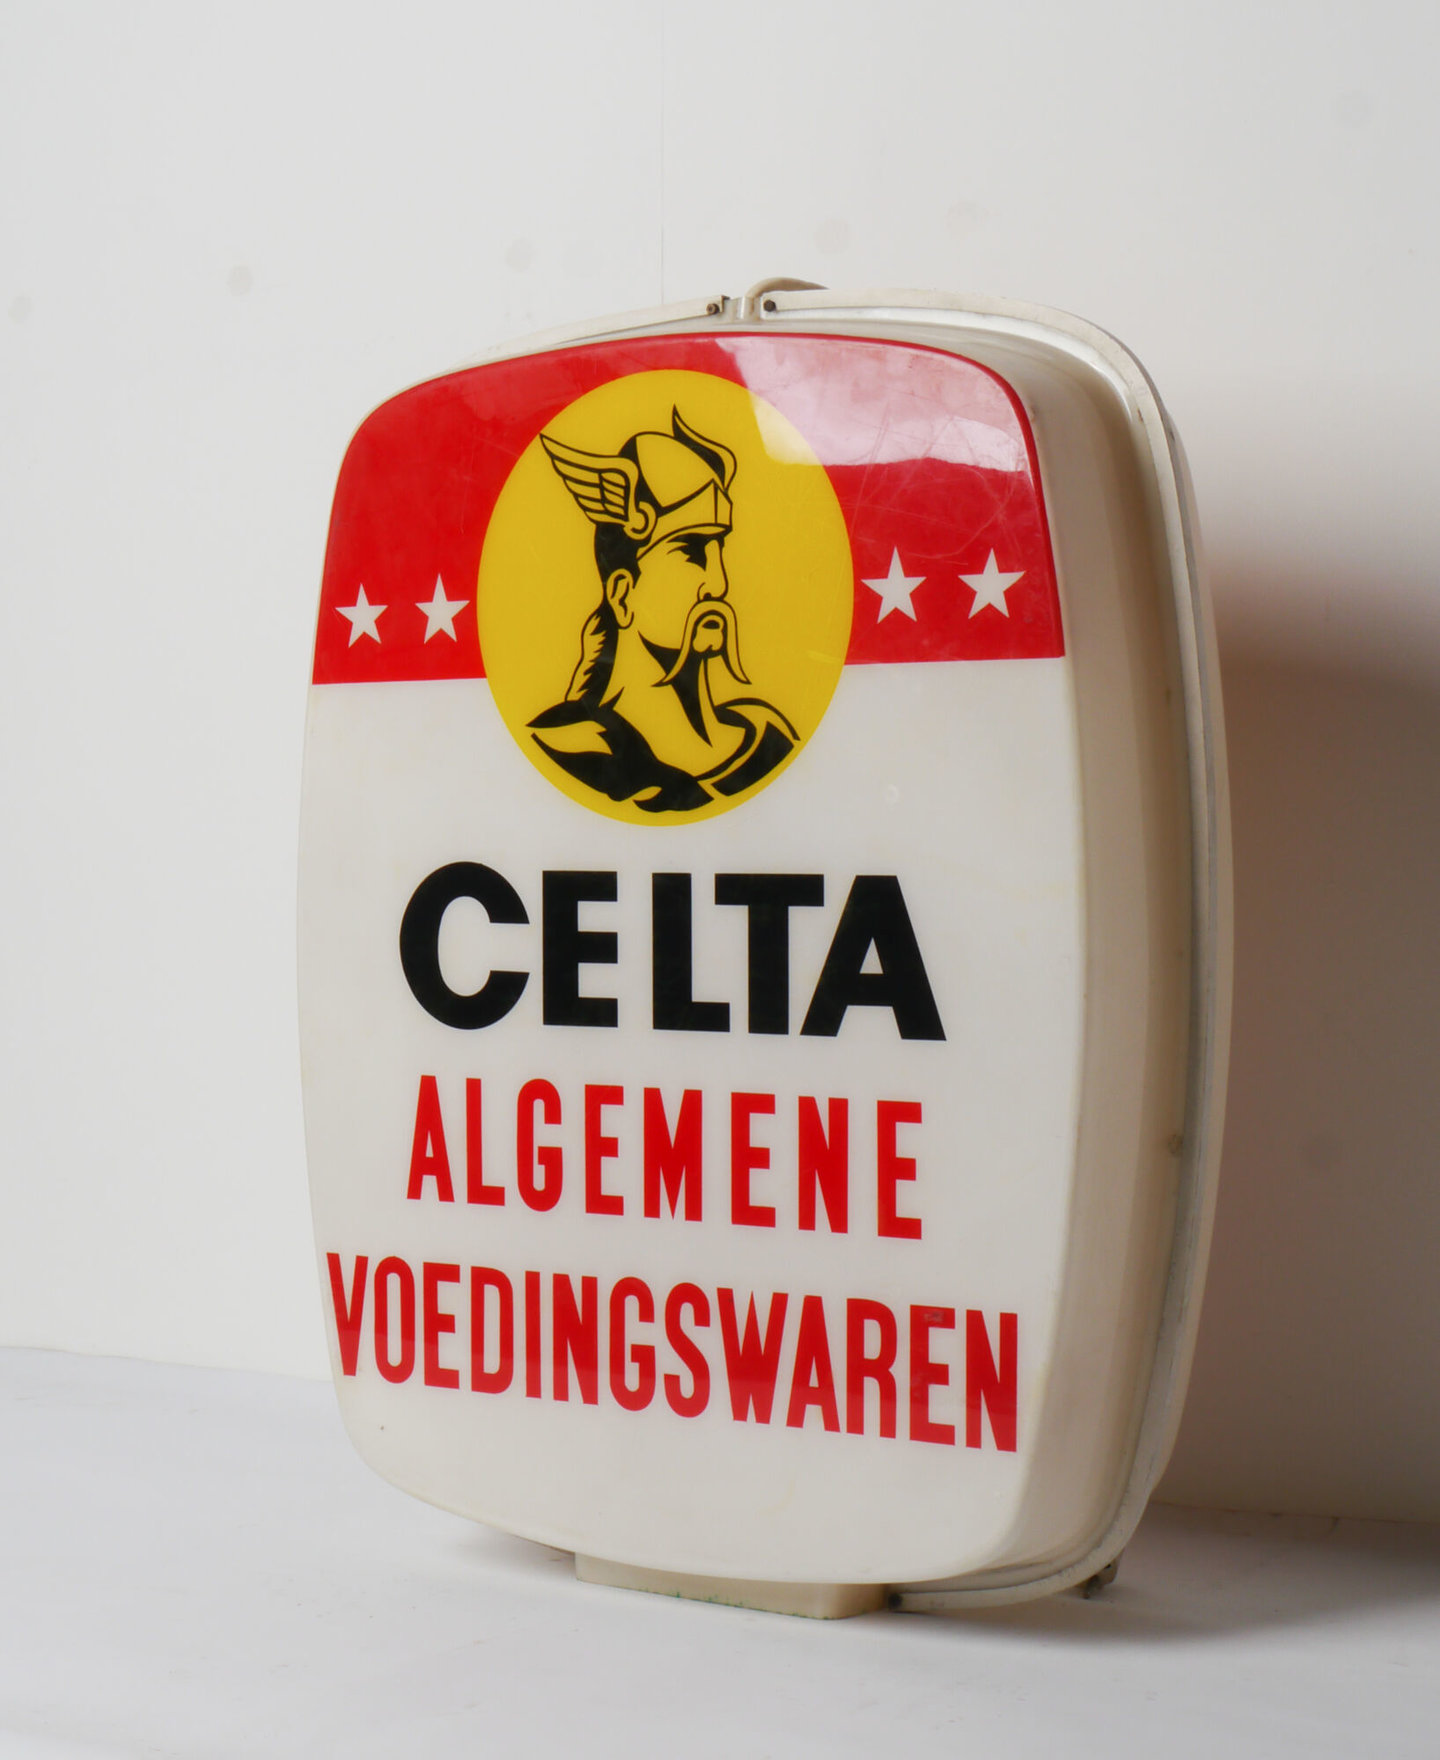 Lichtbak met reclame voor bier van het merk Celta